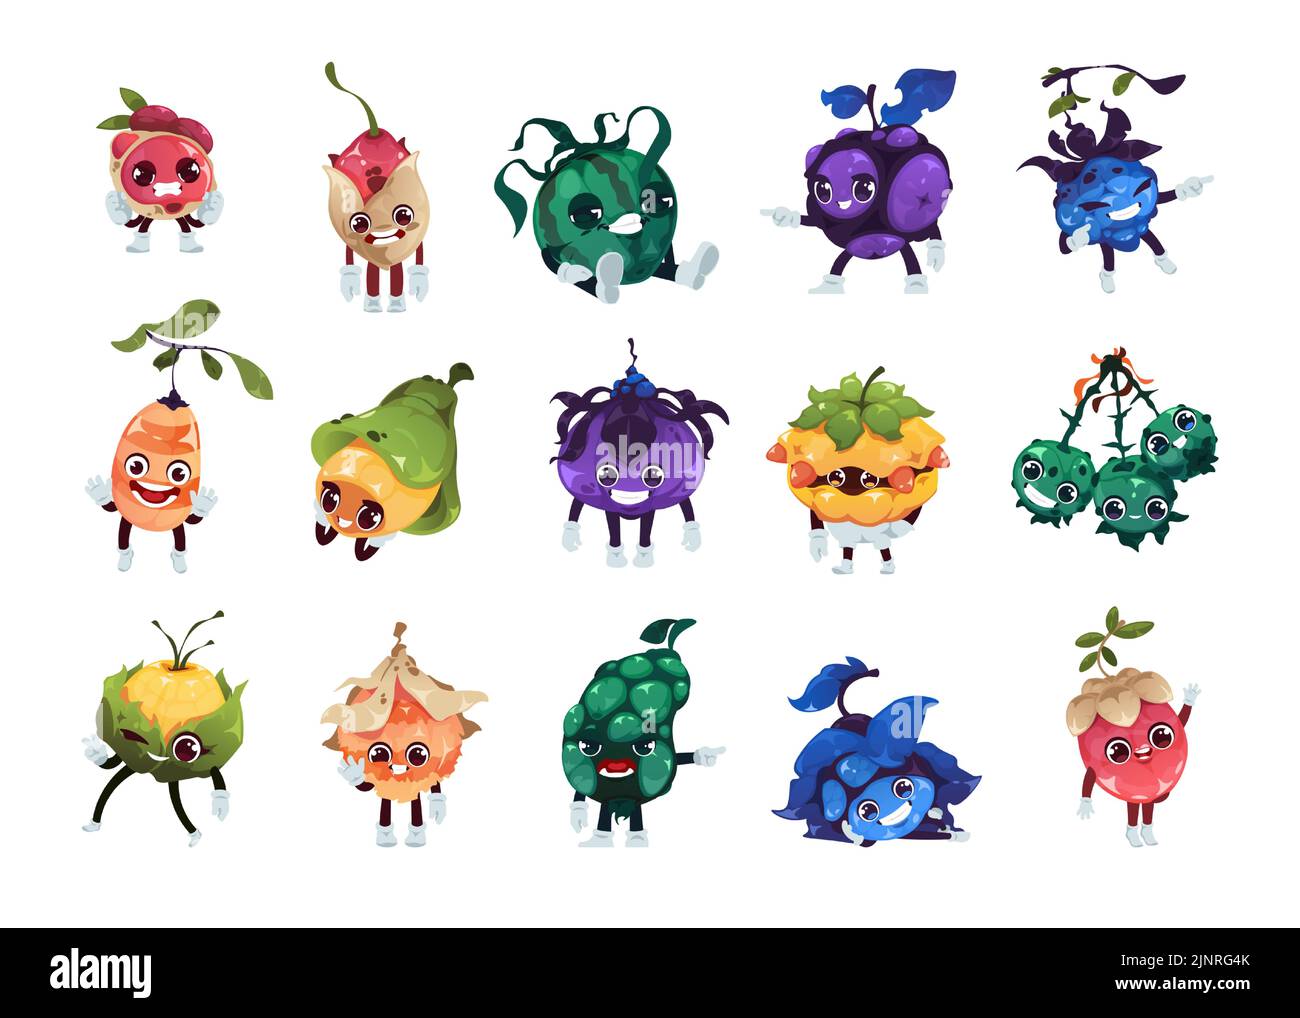 Personajes de Fantasy Fruits. Frutas del bosque de dibujos animados de colores mágicos con caras divertidas, 2D juego de sprite activo de plantas fantásticas. Vectores Iconos emoji aislados Ilustración del Vector